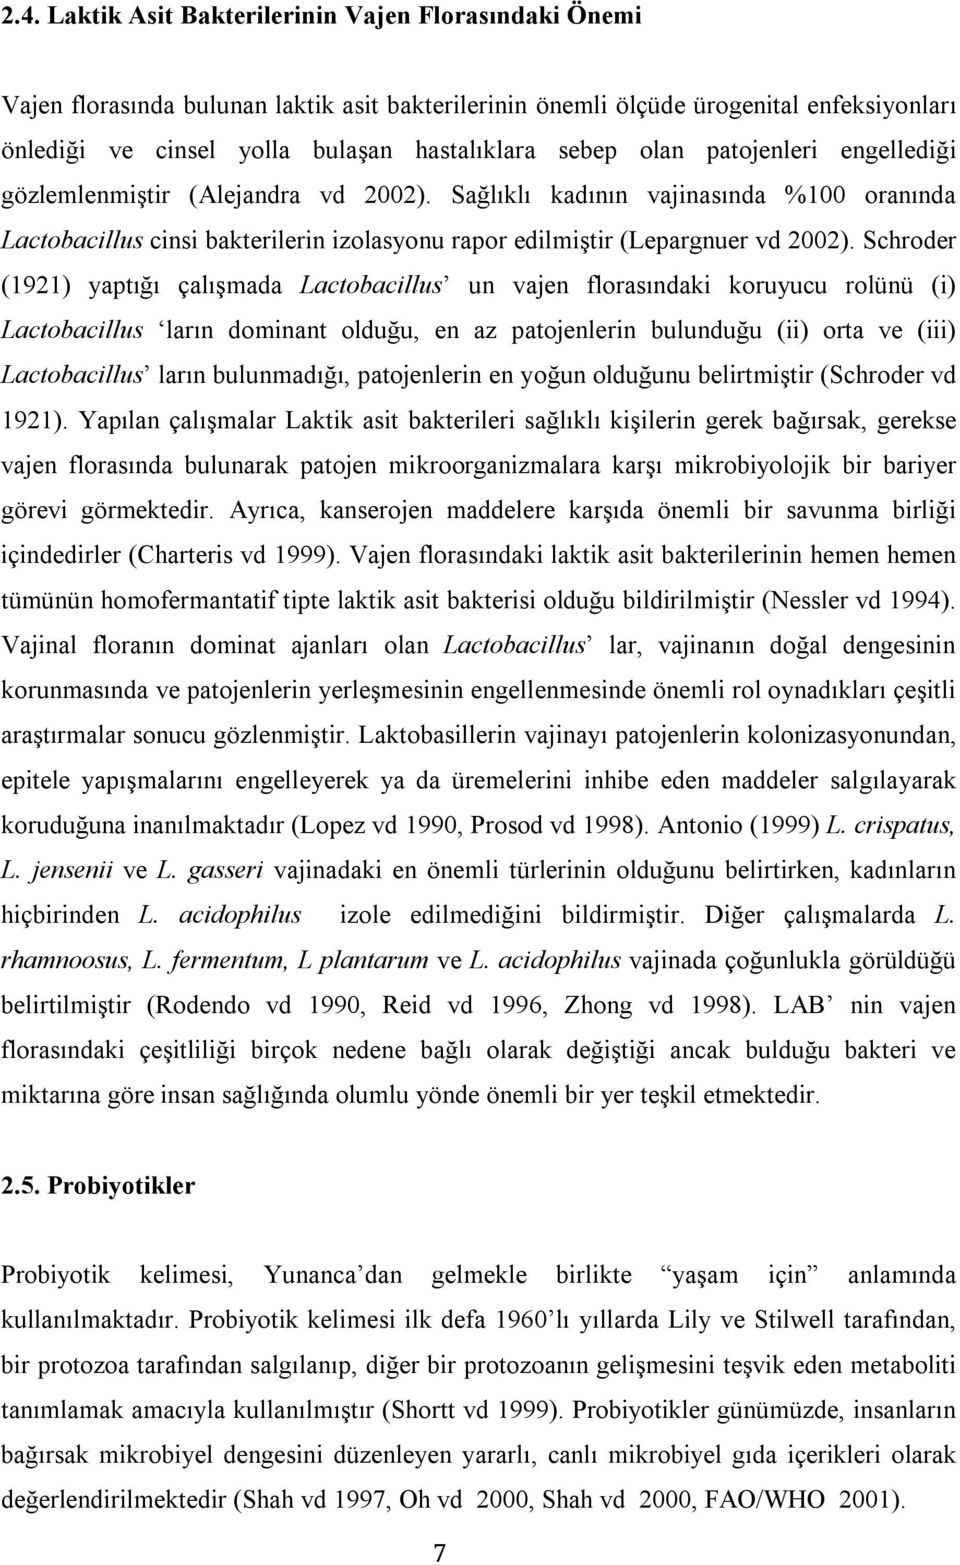 Schroder (1921) yaptığı çalışmada Lactobacillus un vajen florasındaki koruyucu rolünü (i) Lactobacillus ların dominant olduğu, en az patojenlerin bulunduğu (ii) orta ve (iii) Lactobacillus ların